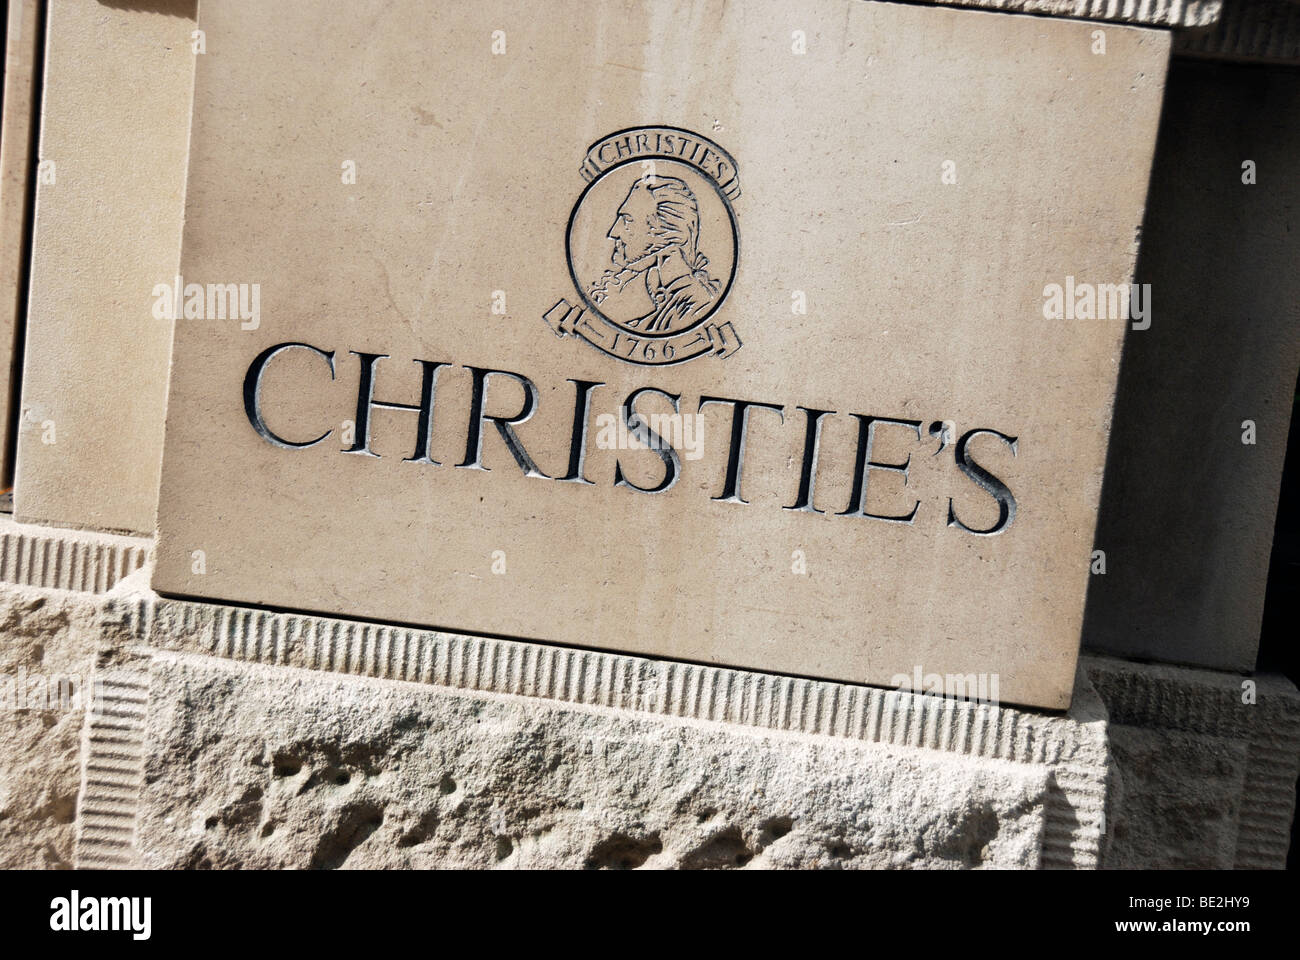 Casa d'aste Christie's segno e logo sul muro, St James's, London, England, Regno Unito Foto Stock